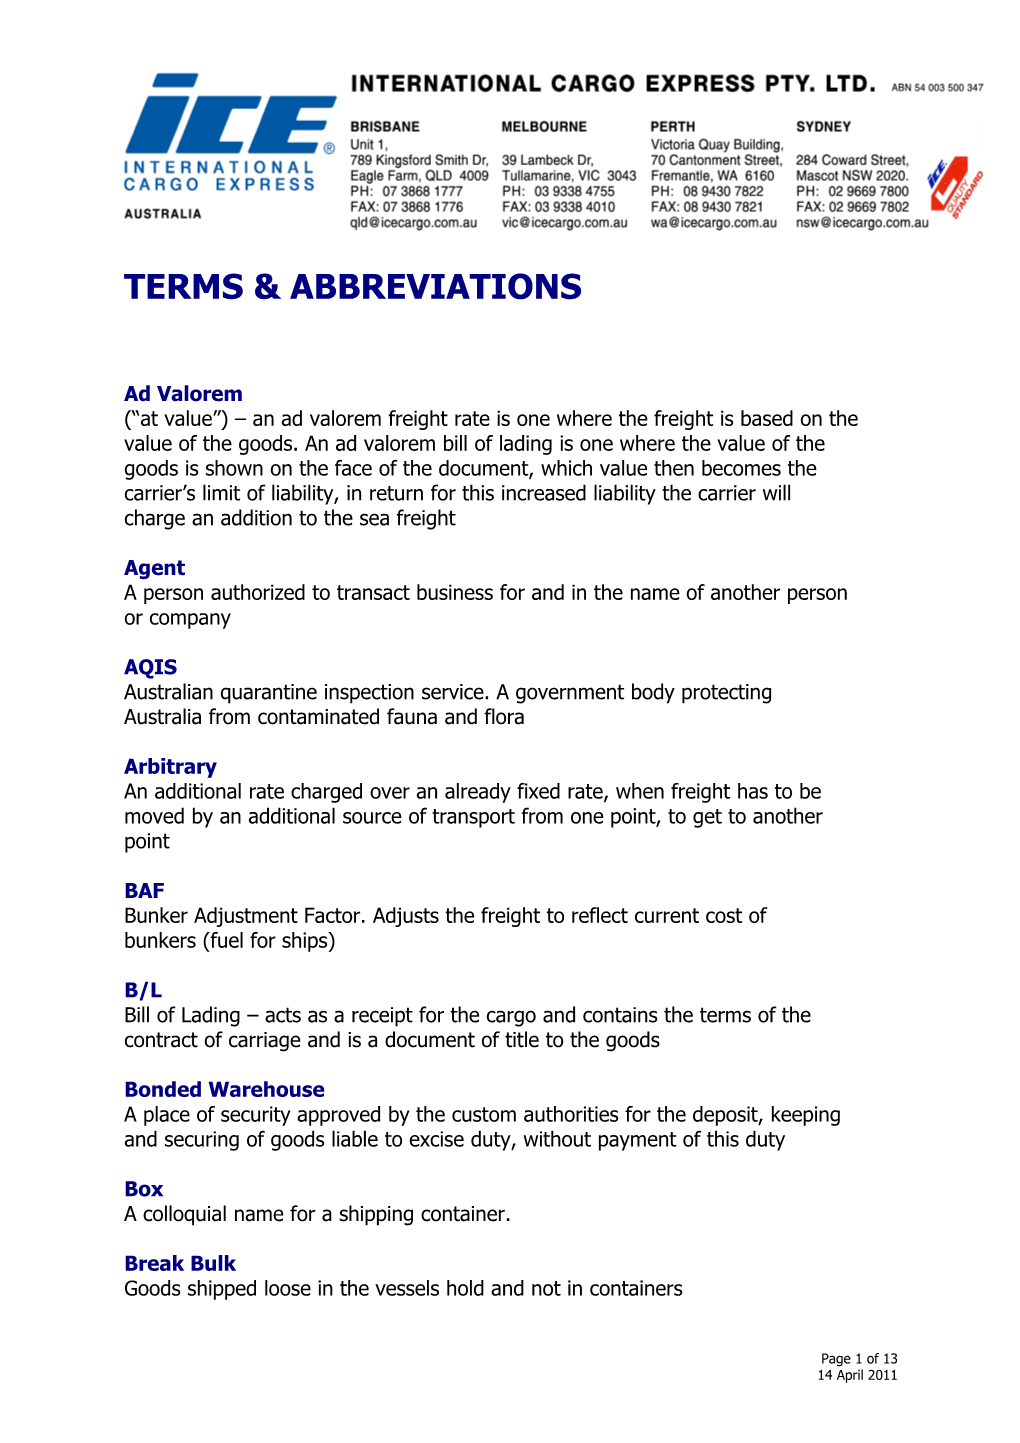 Terms & Abbreviations